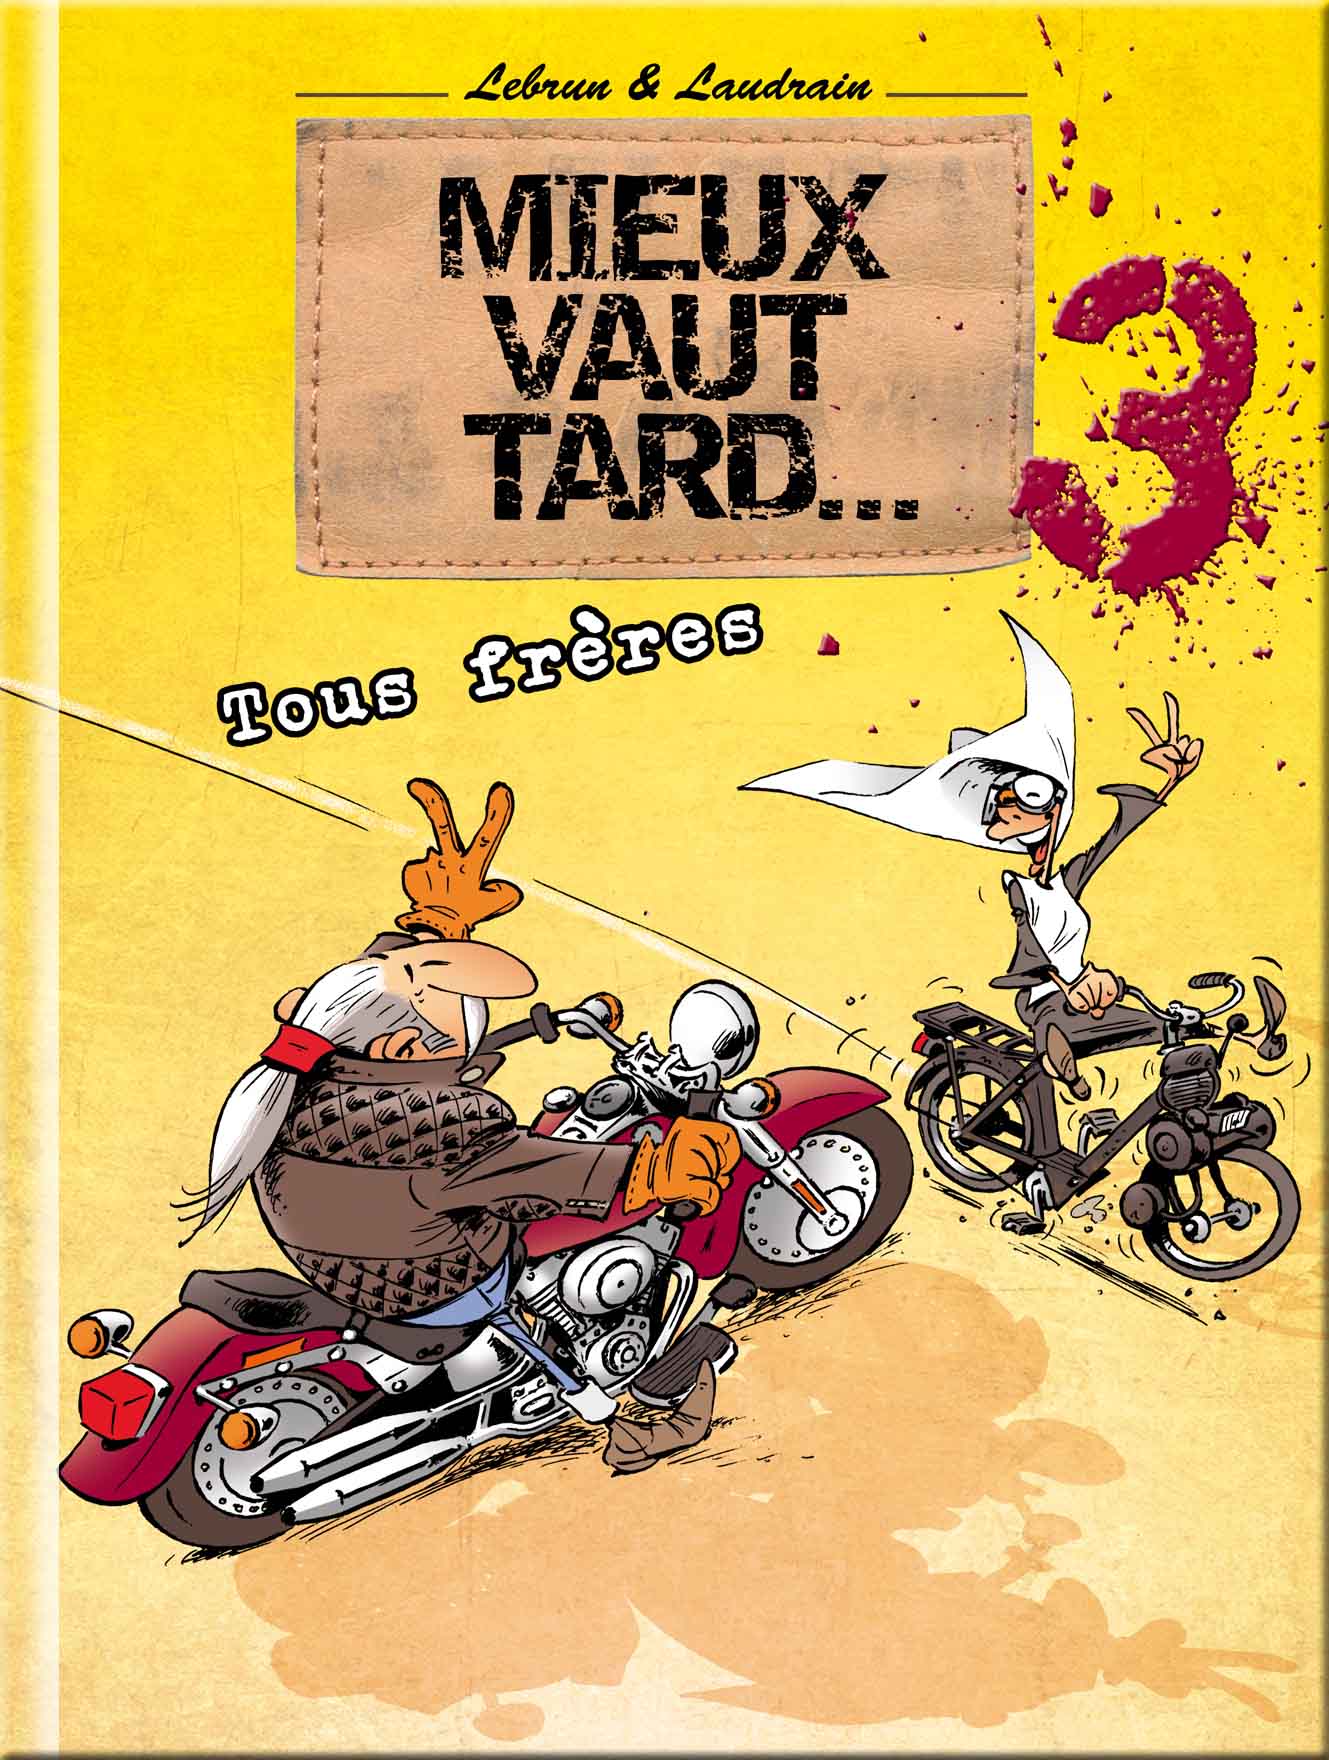 Bande dessinée « Mieux vaut tard, tome 3 » : en passant (...)